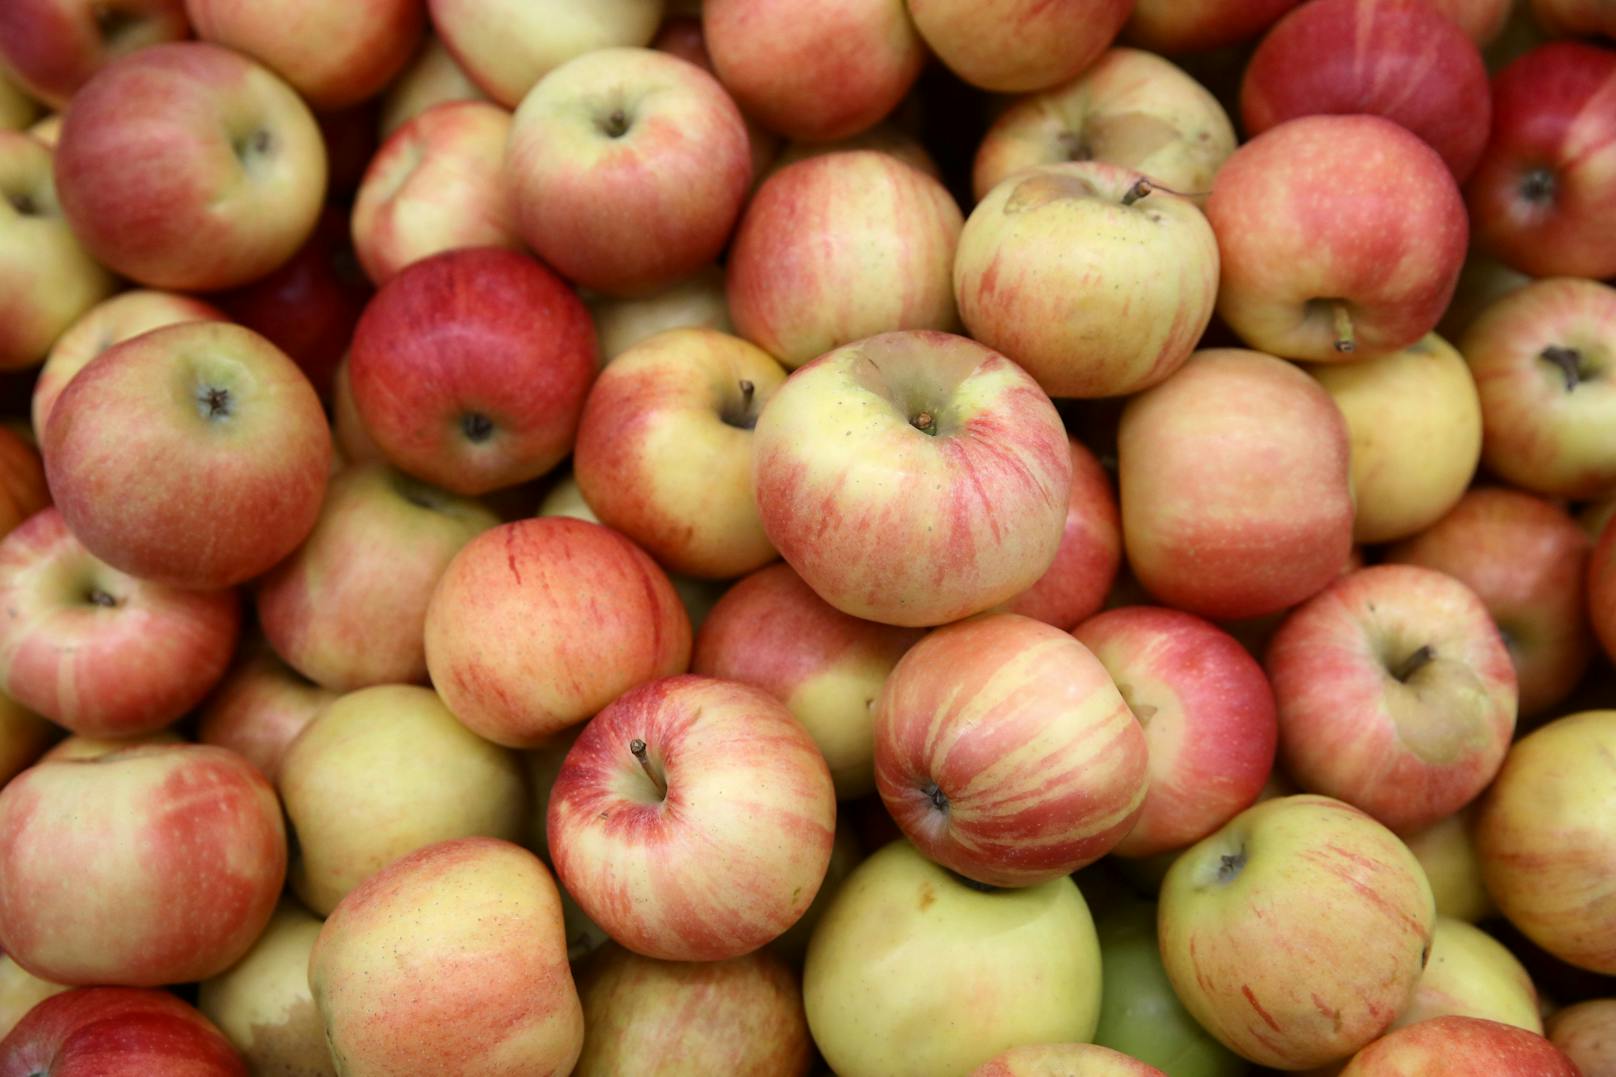 Der Obstbauer hatte dem Finanzamt Apfellieferungen ins Ausland gemeldet, die aber nie stattgefunden haben.